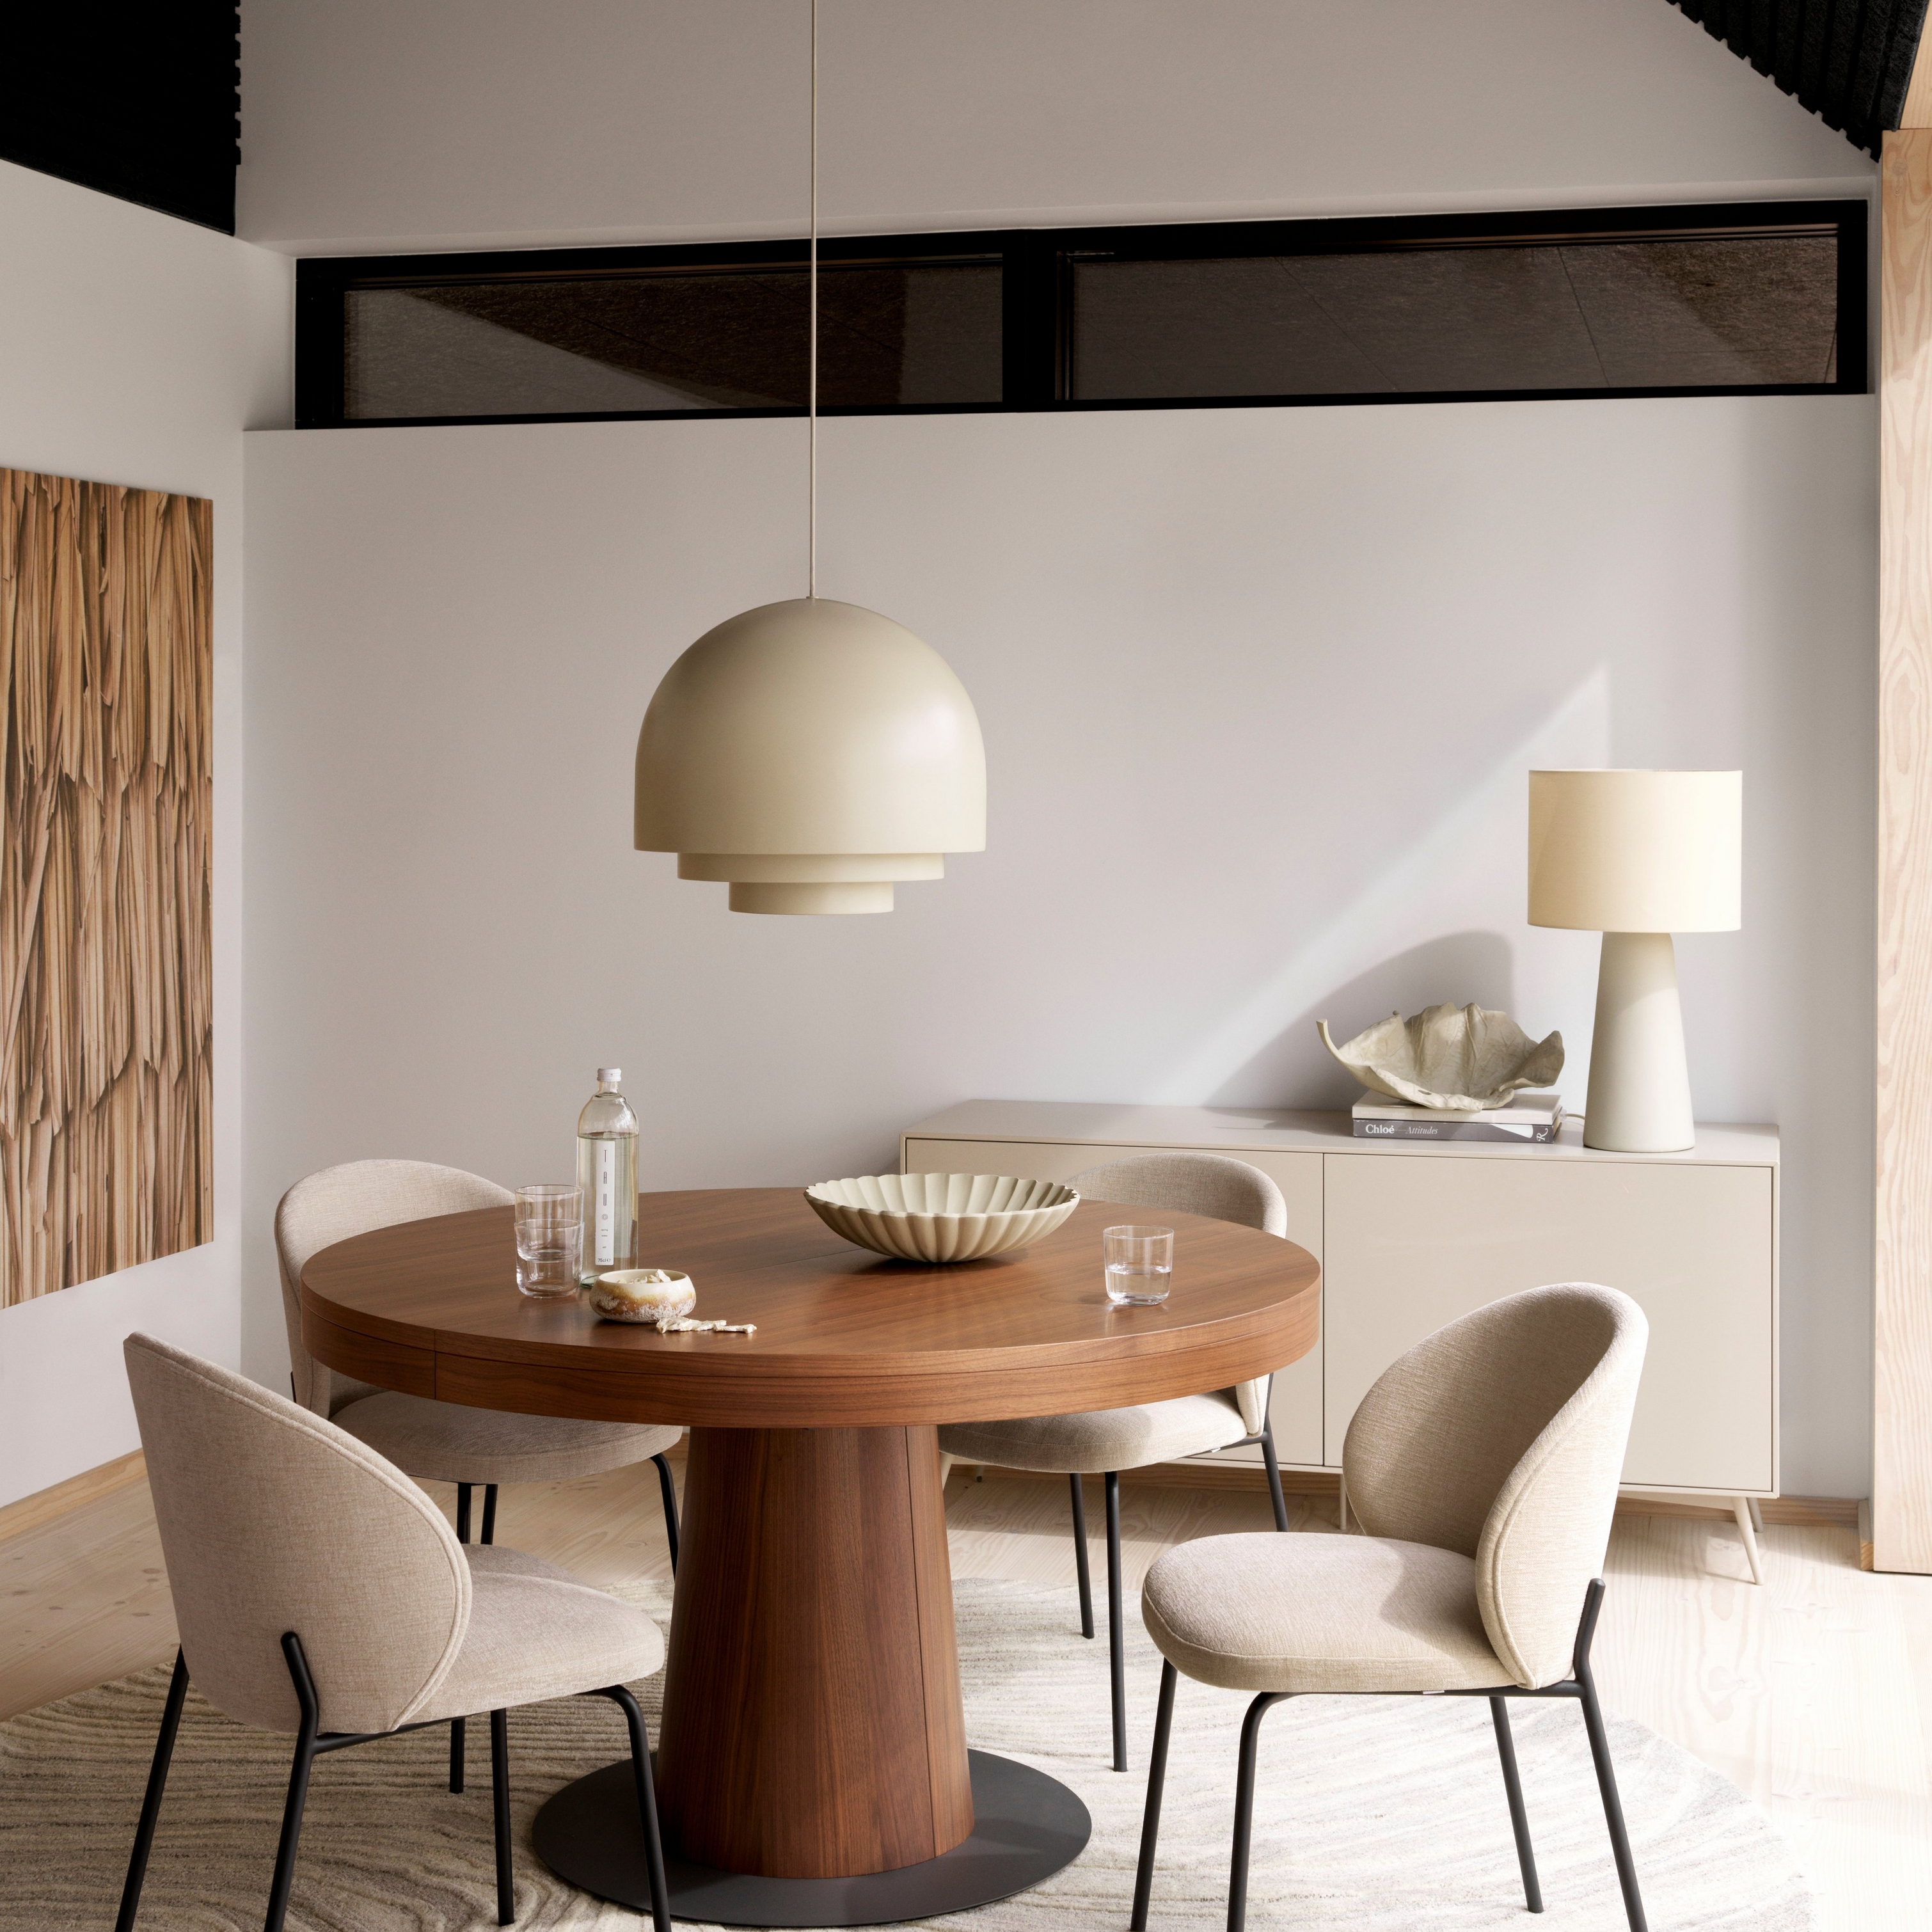 Sala de jantar moderna com mesa redonda Granada em madeira, cadeiras Princeton beges, pendente de luz e tapete creme.